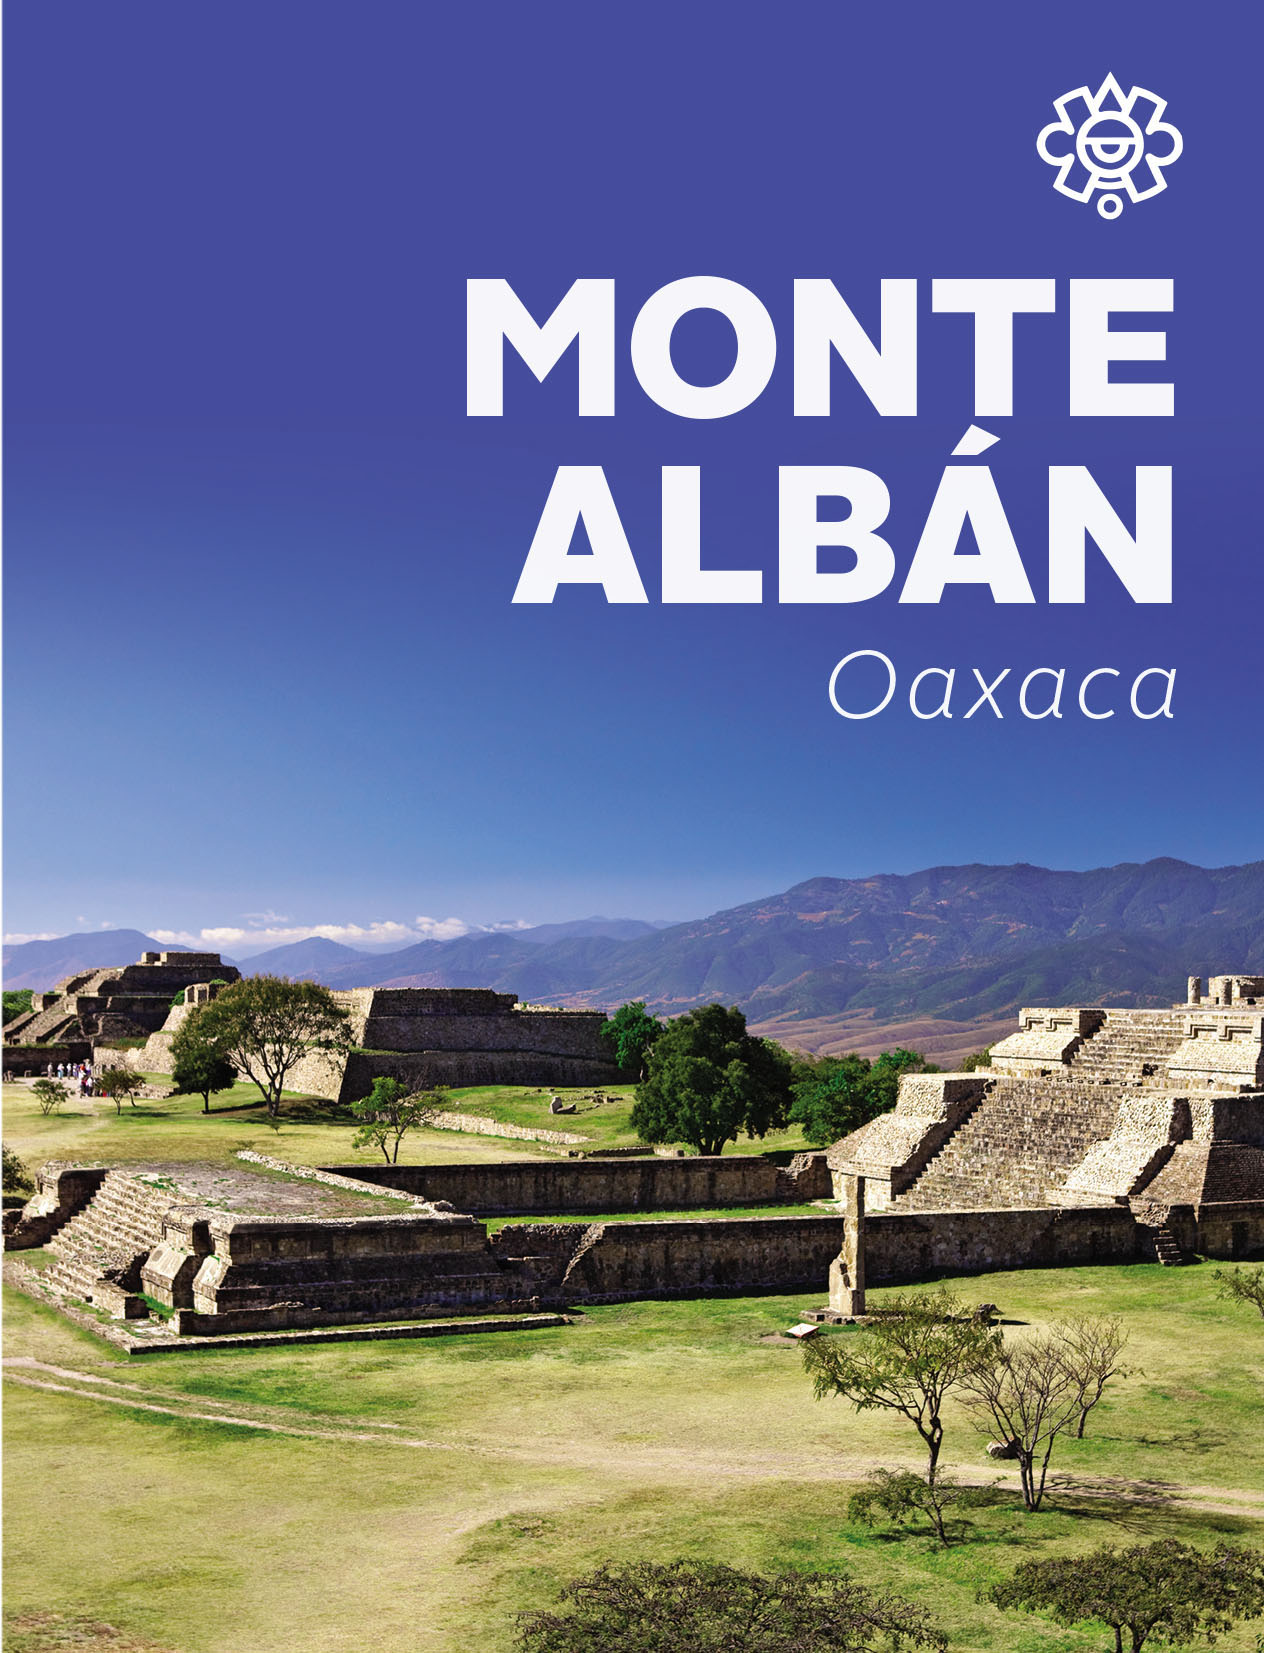 Monte Albán